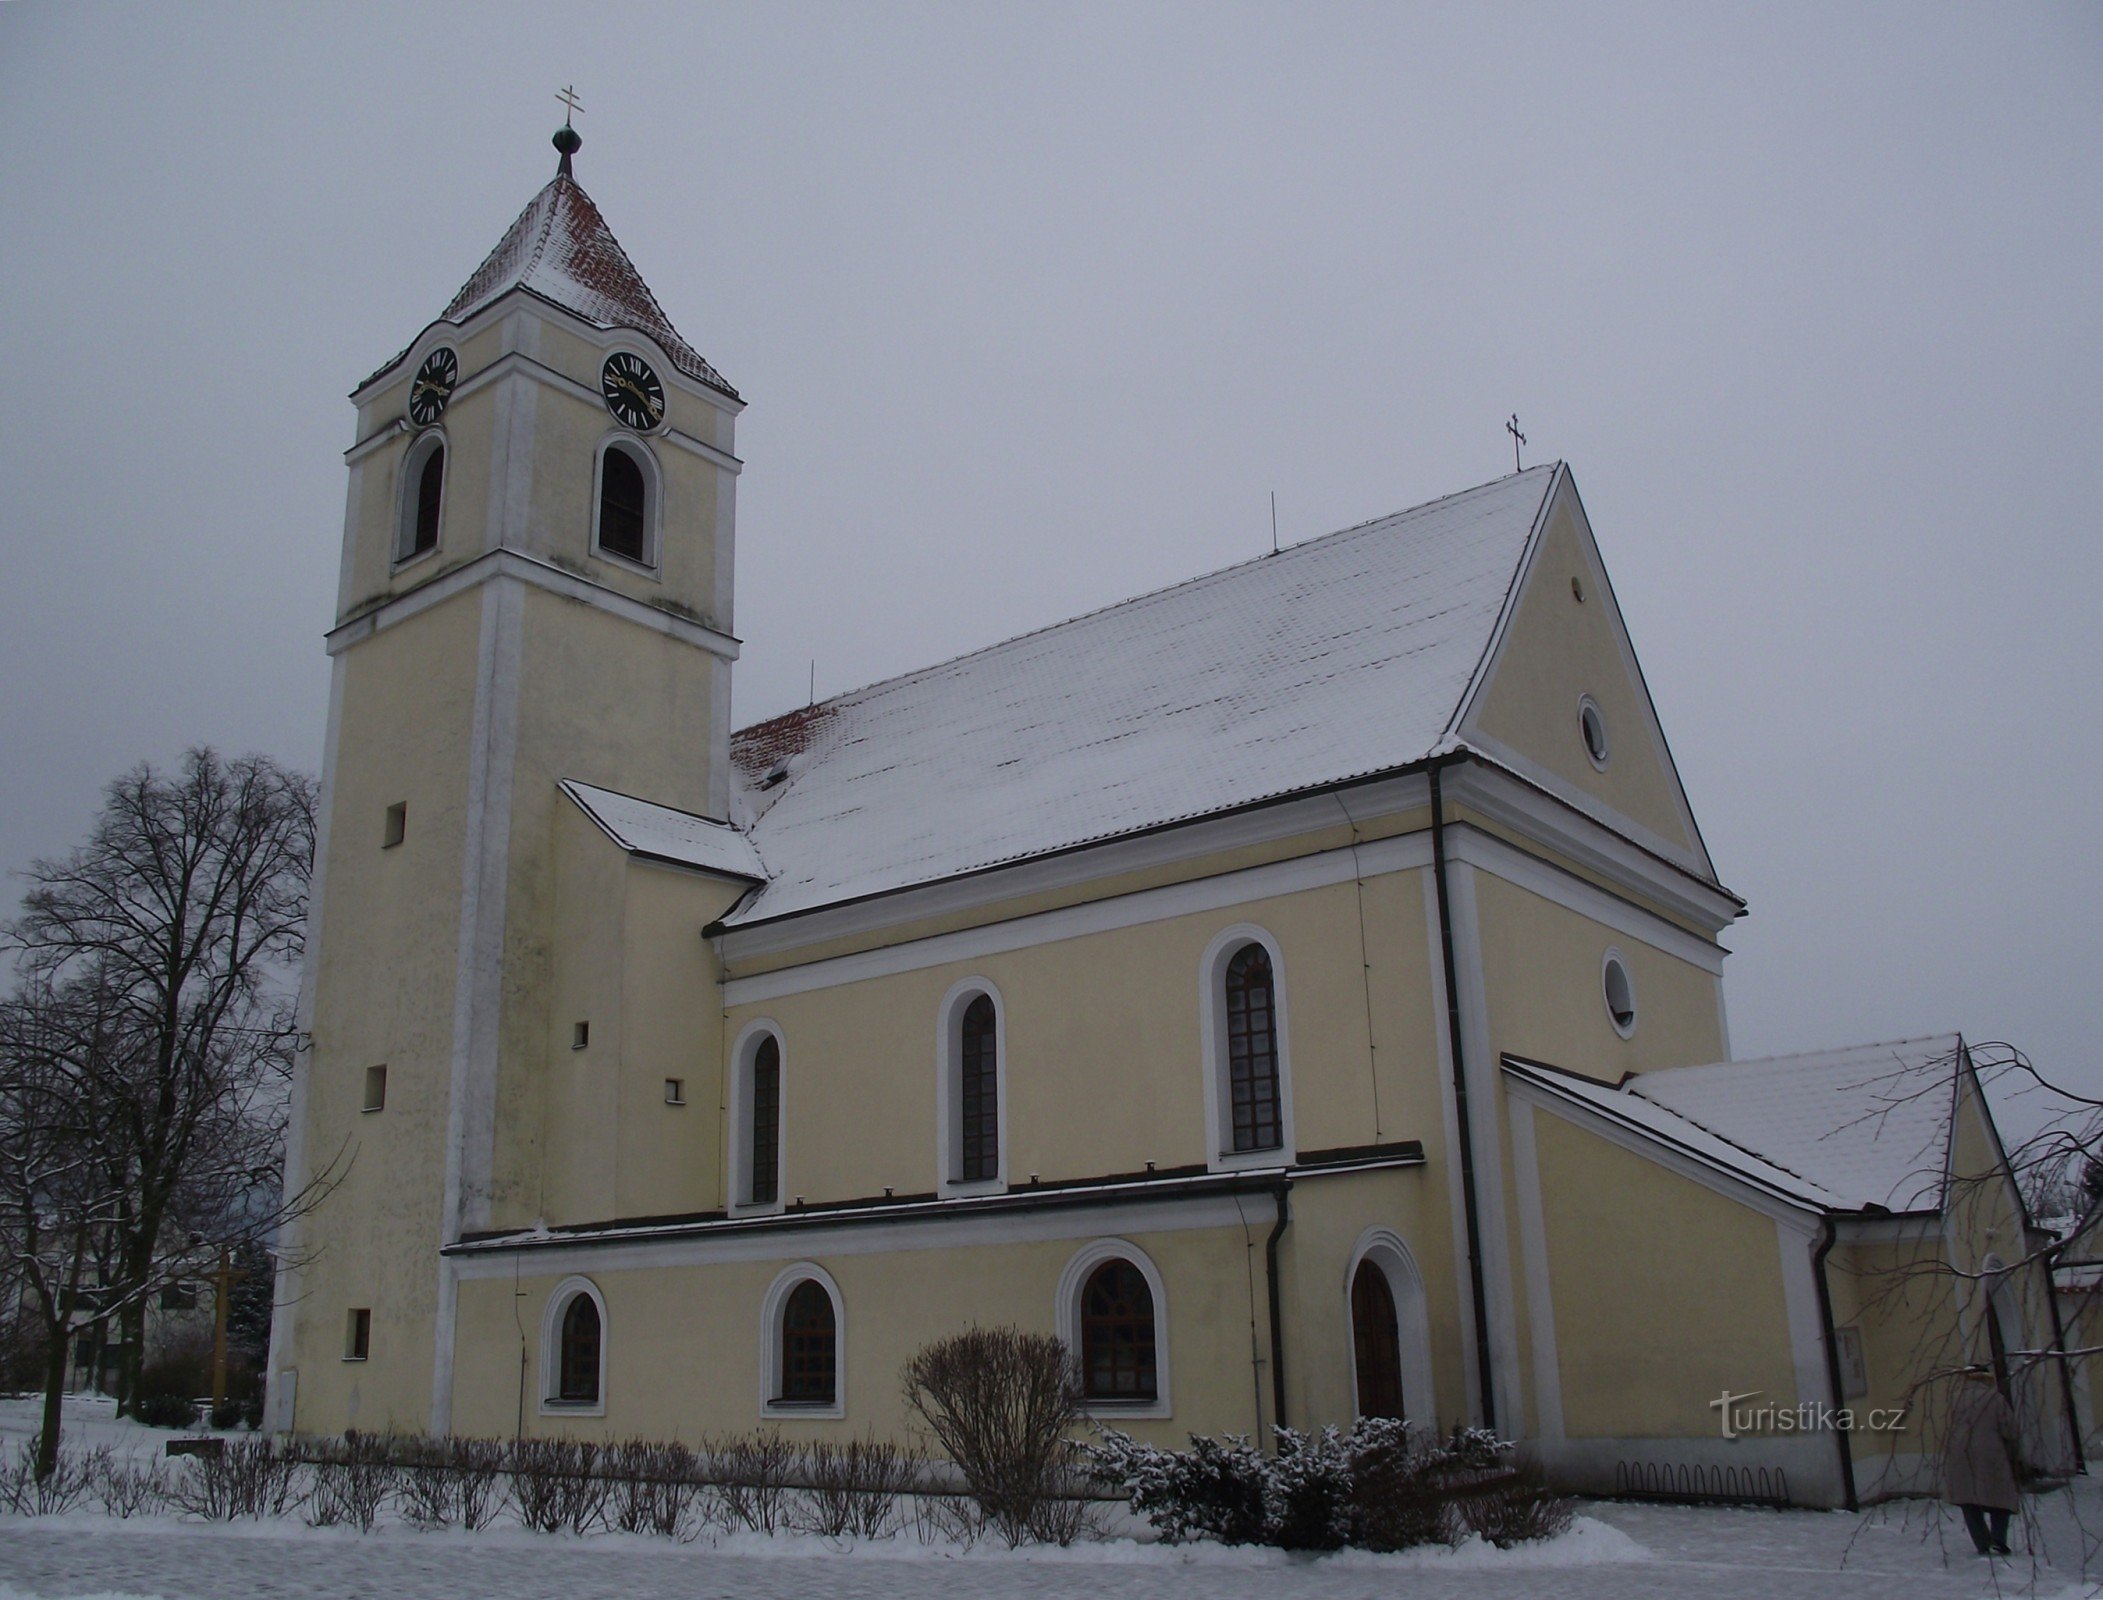 Цетковице - церковь св. Филипп и Джейкоб